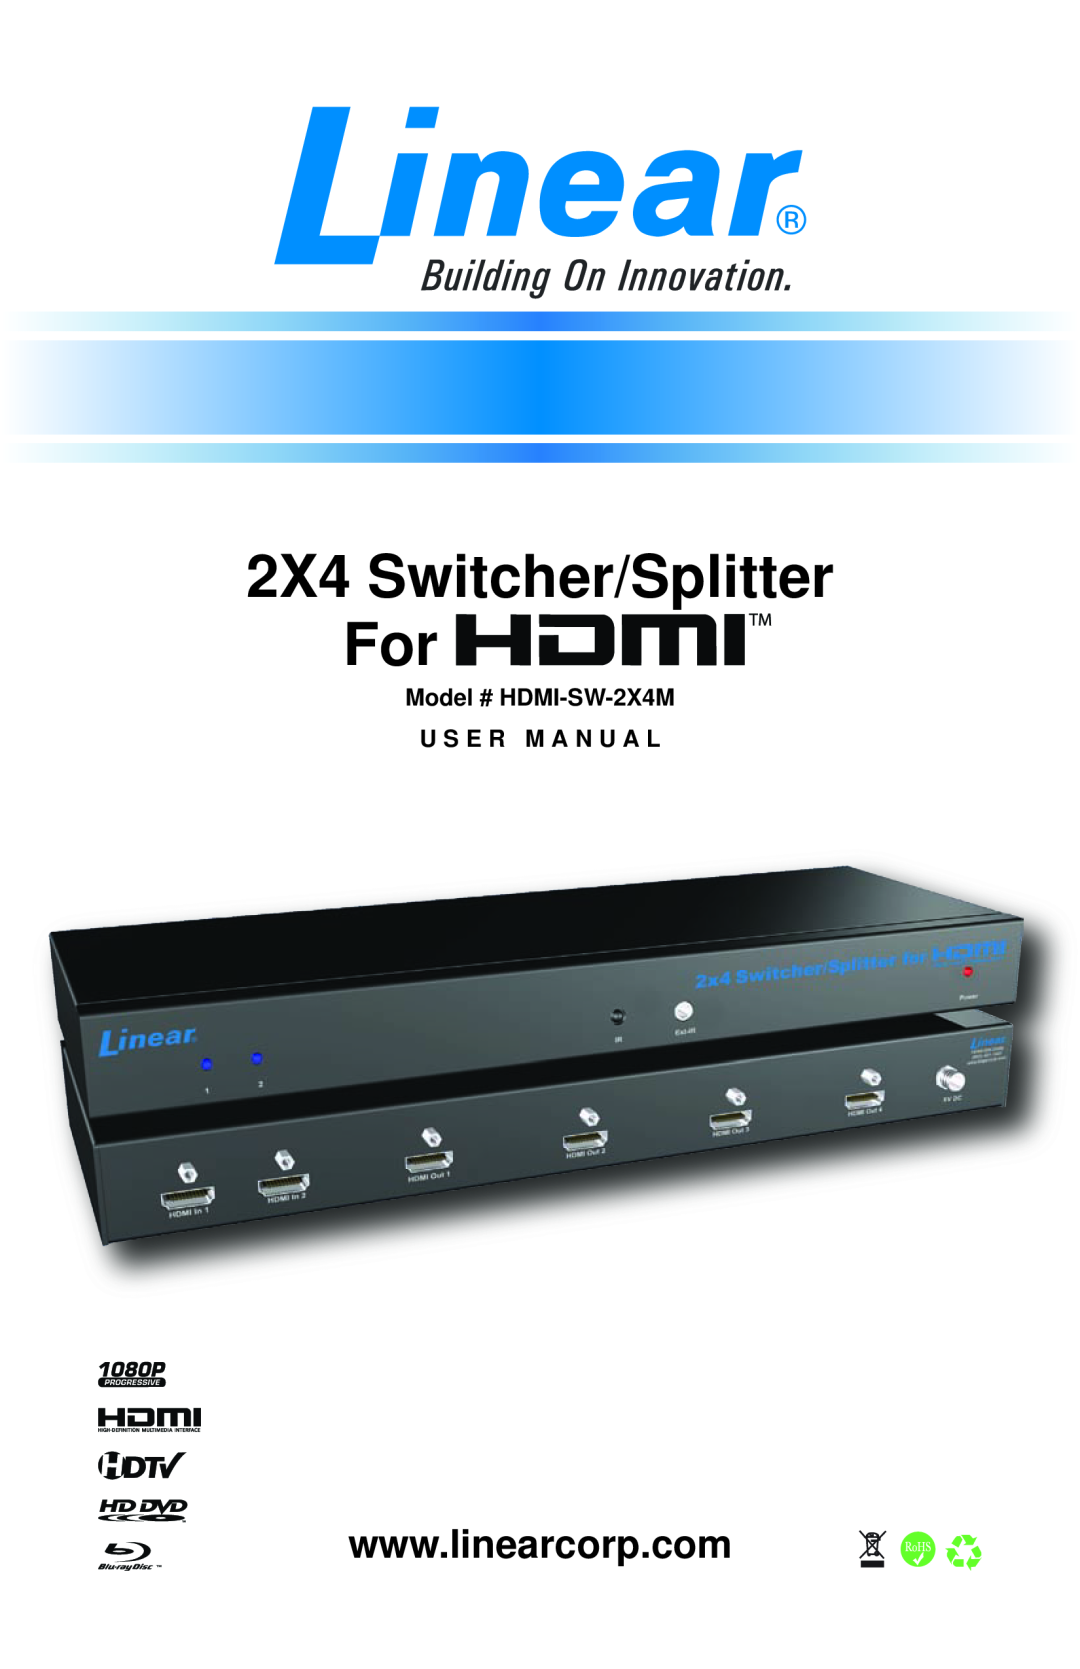 Linear user manual Model # HDMI-SW-2X4M, U S E R M A N U A L, 2X4 Switcher/Splitter 